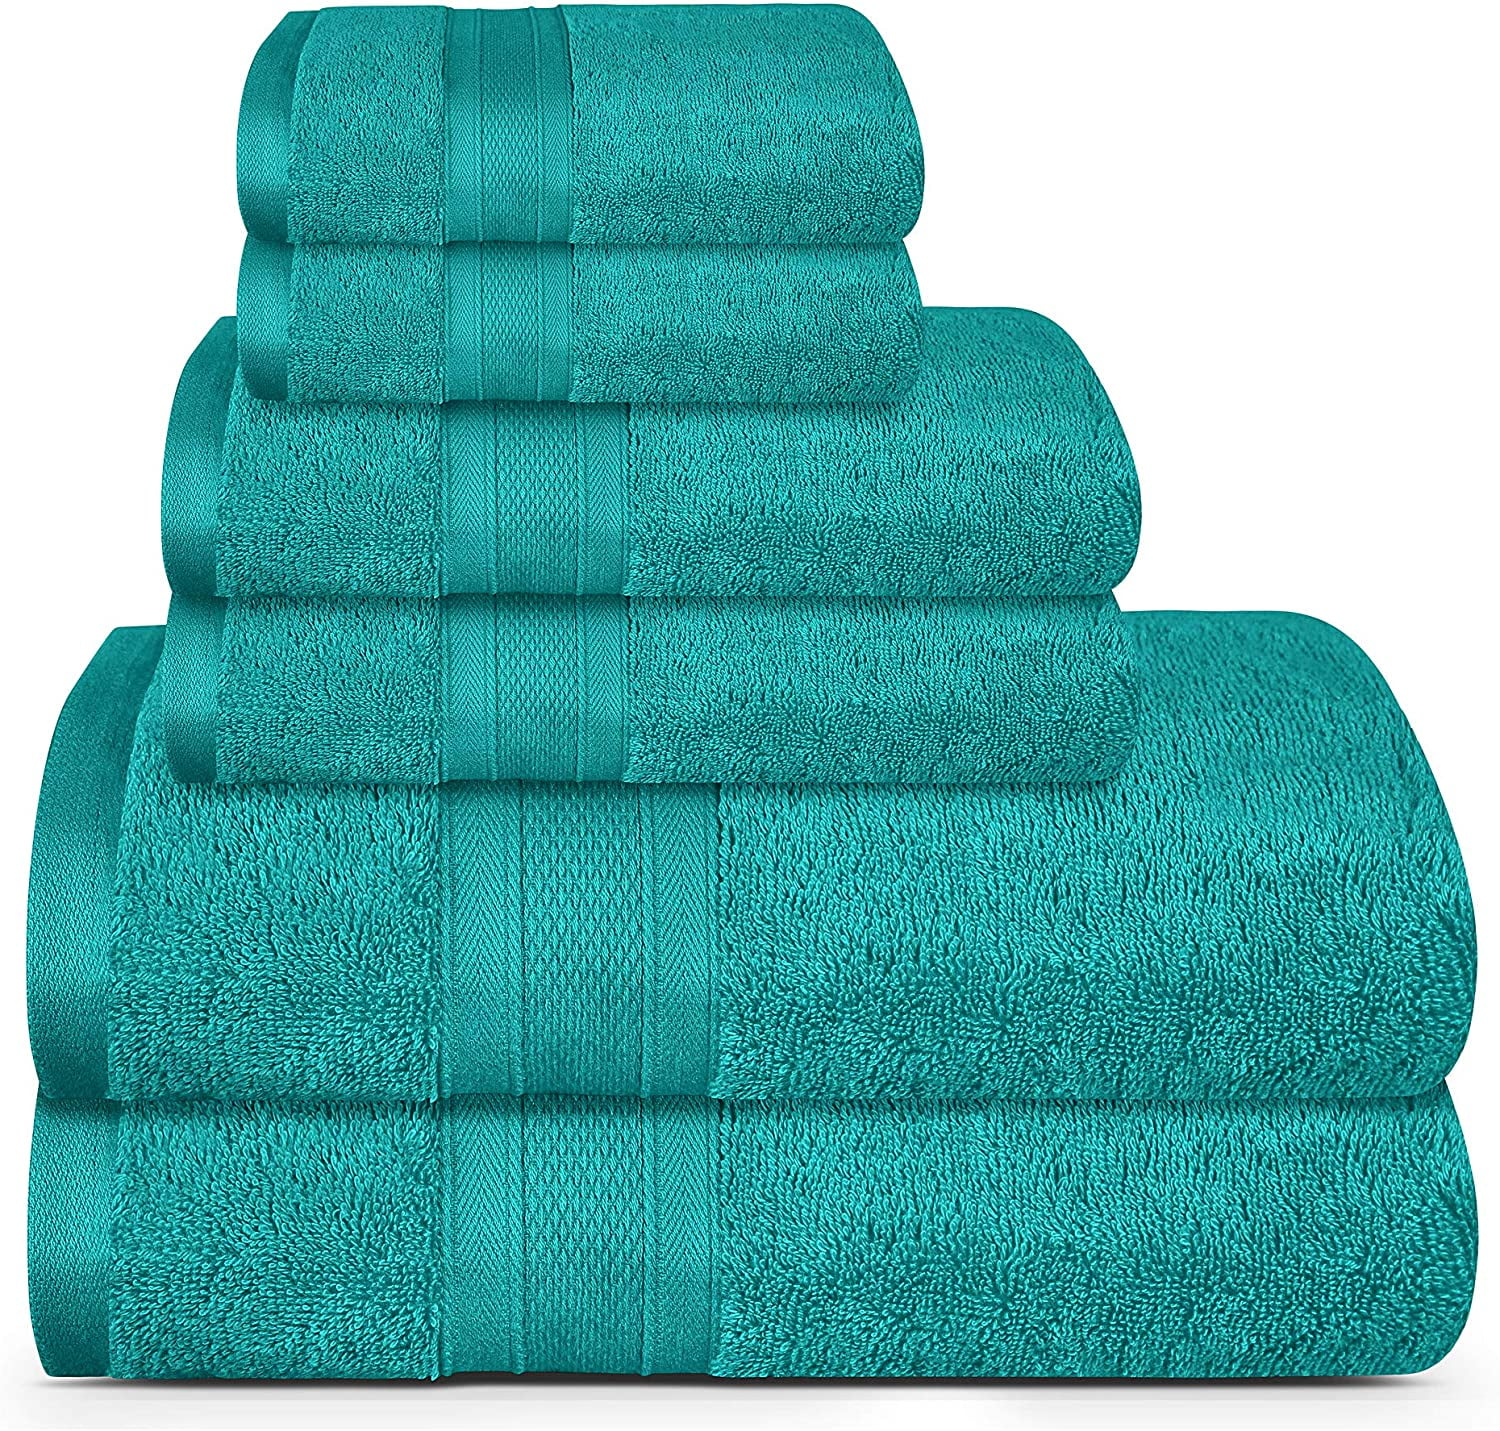 Turquoise Towel Sets 100% Cotton Towel Bale 500 GSM Bathroom 2 3 4 6 Piece Sets 